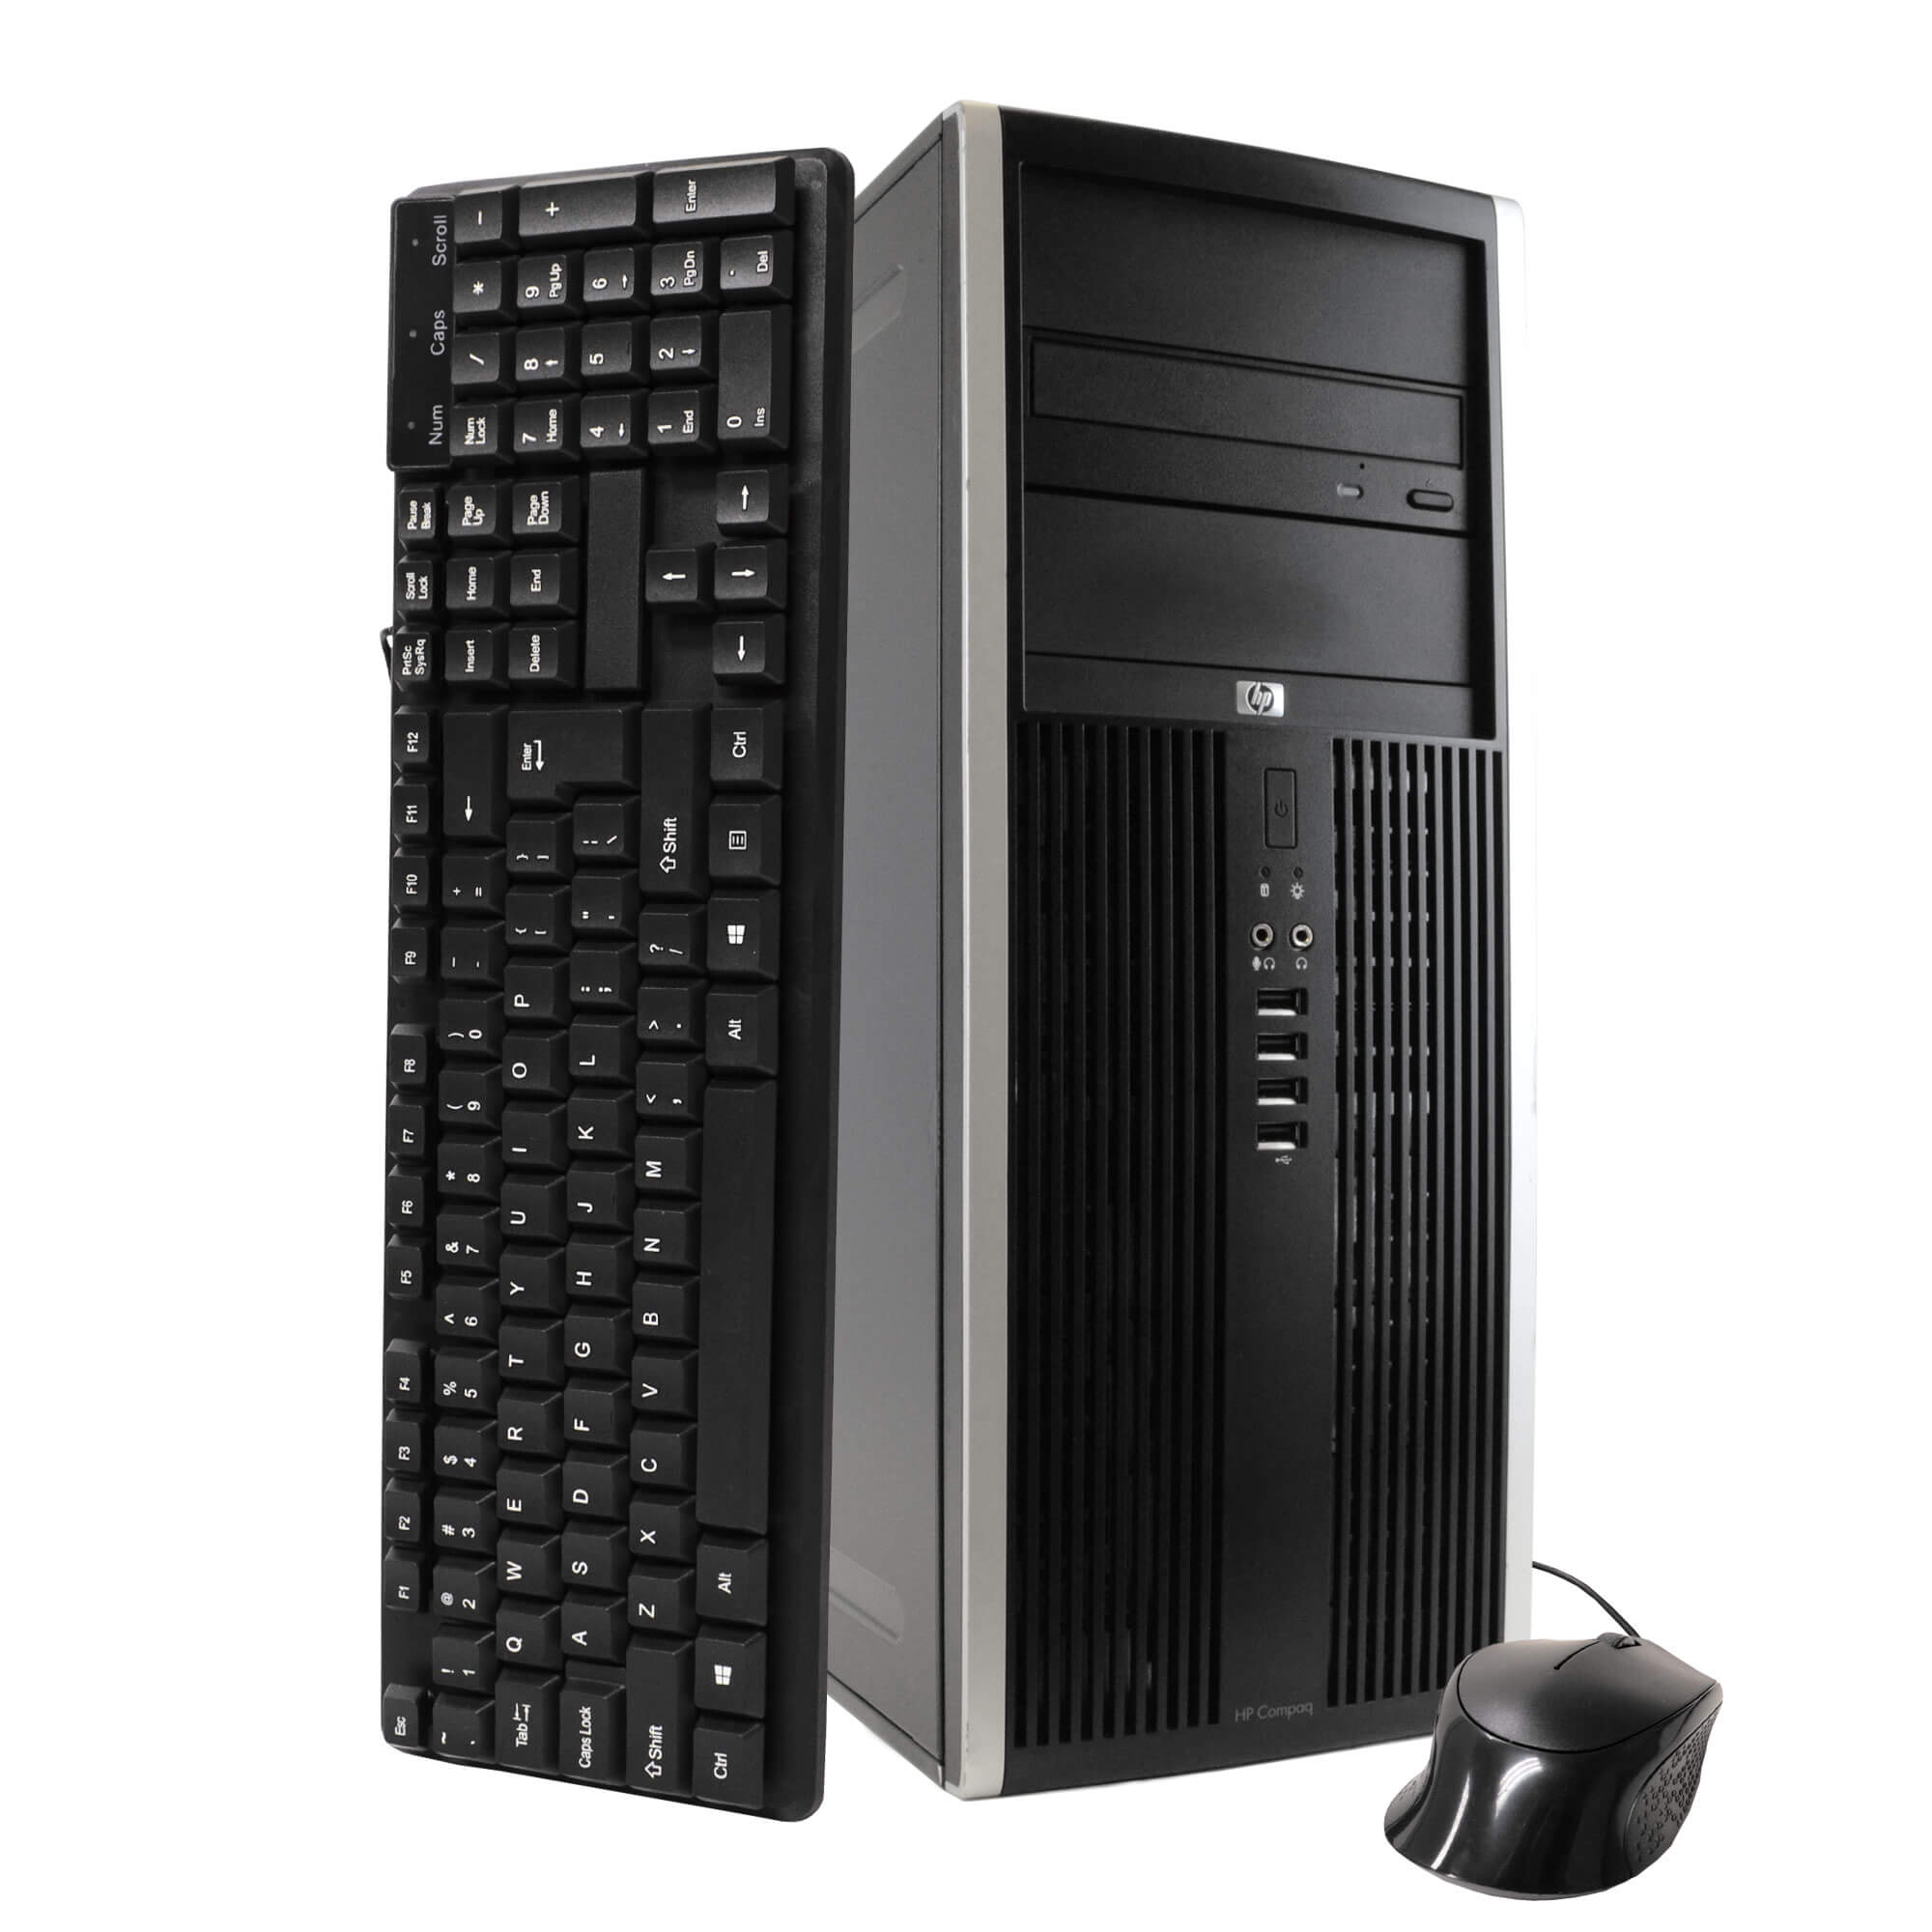 HP Compaq Elite 8100 Tower PC, 3.2GHz Intel i5 Dual Core Gen 1, 16GB RAM, 1TB SATA HD, Windows 10 Professional 64 bit, Dual (2) 22” Screens Screen (Renewed)